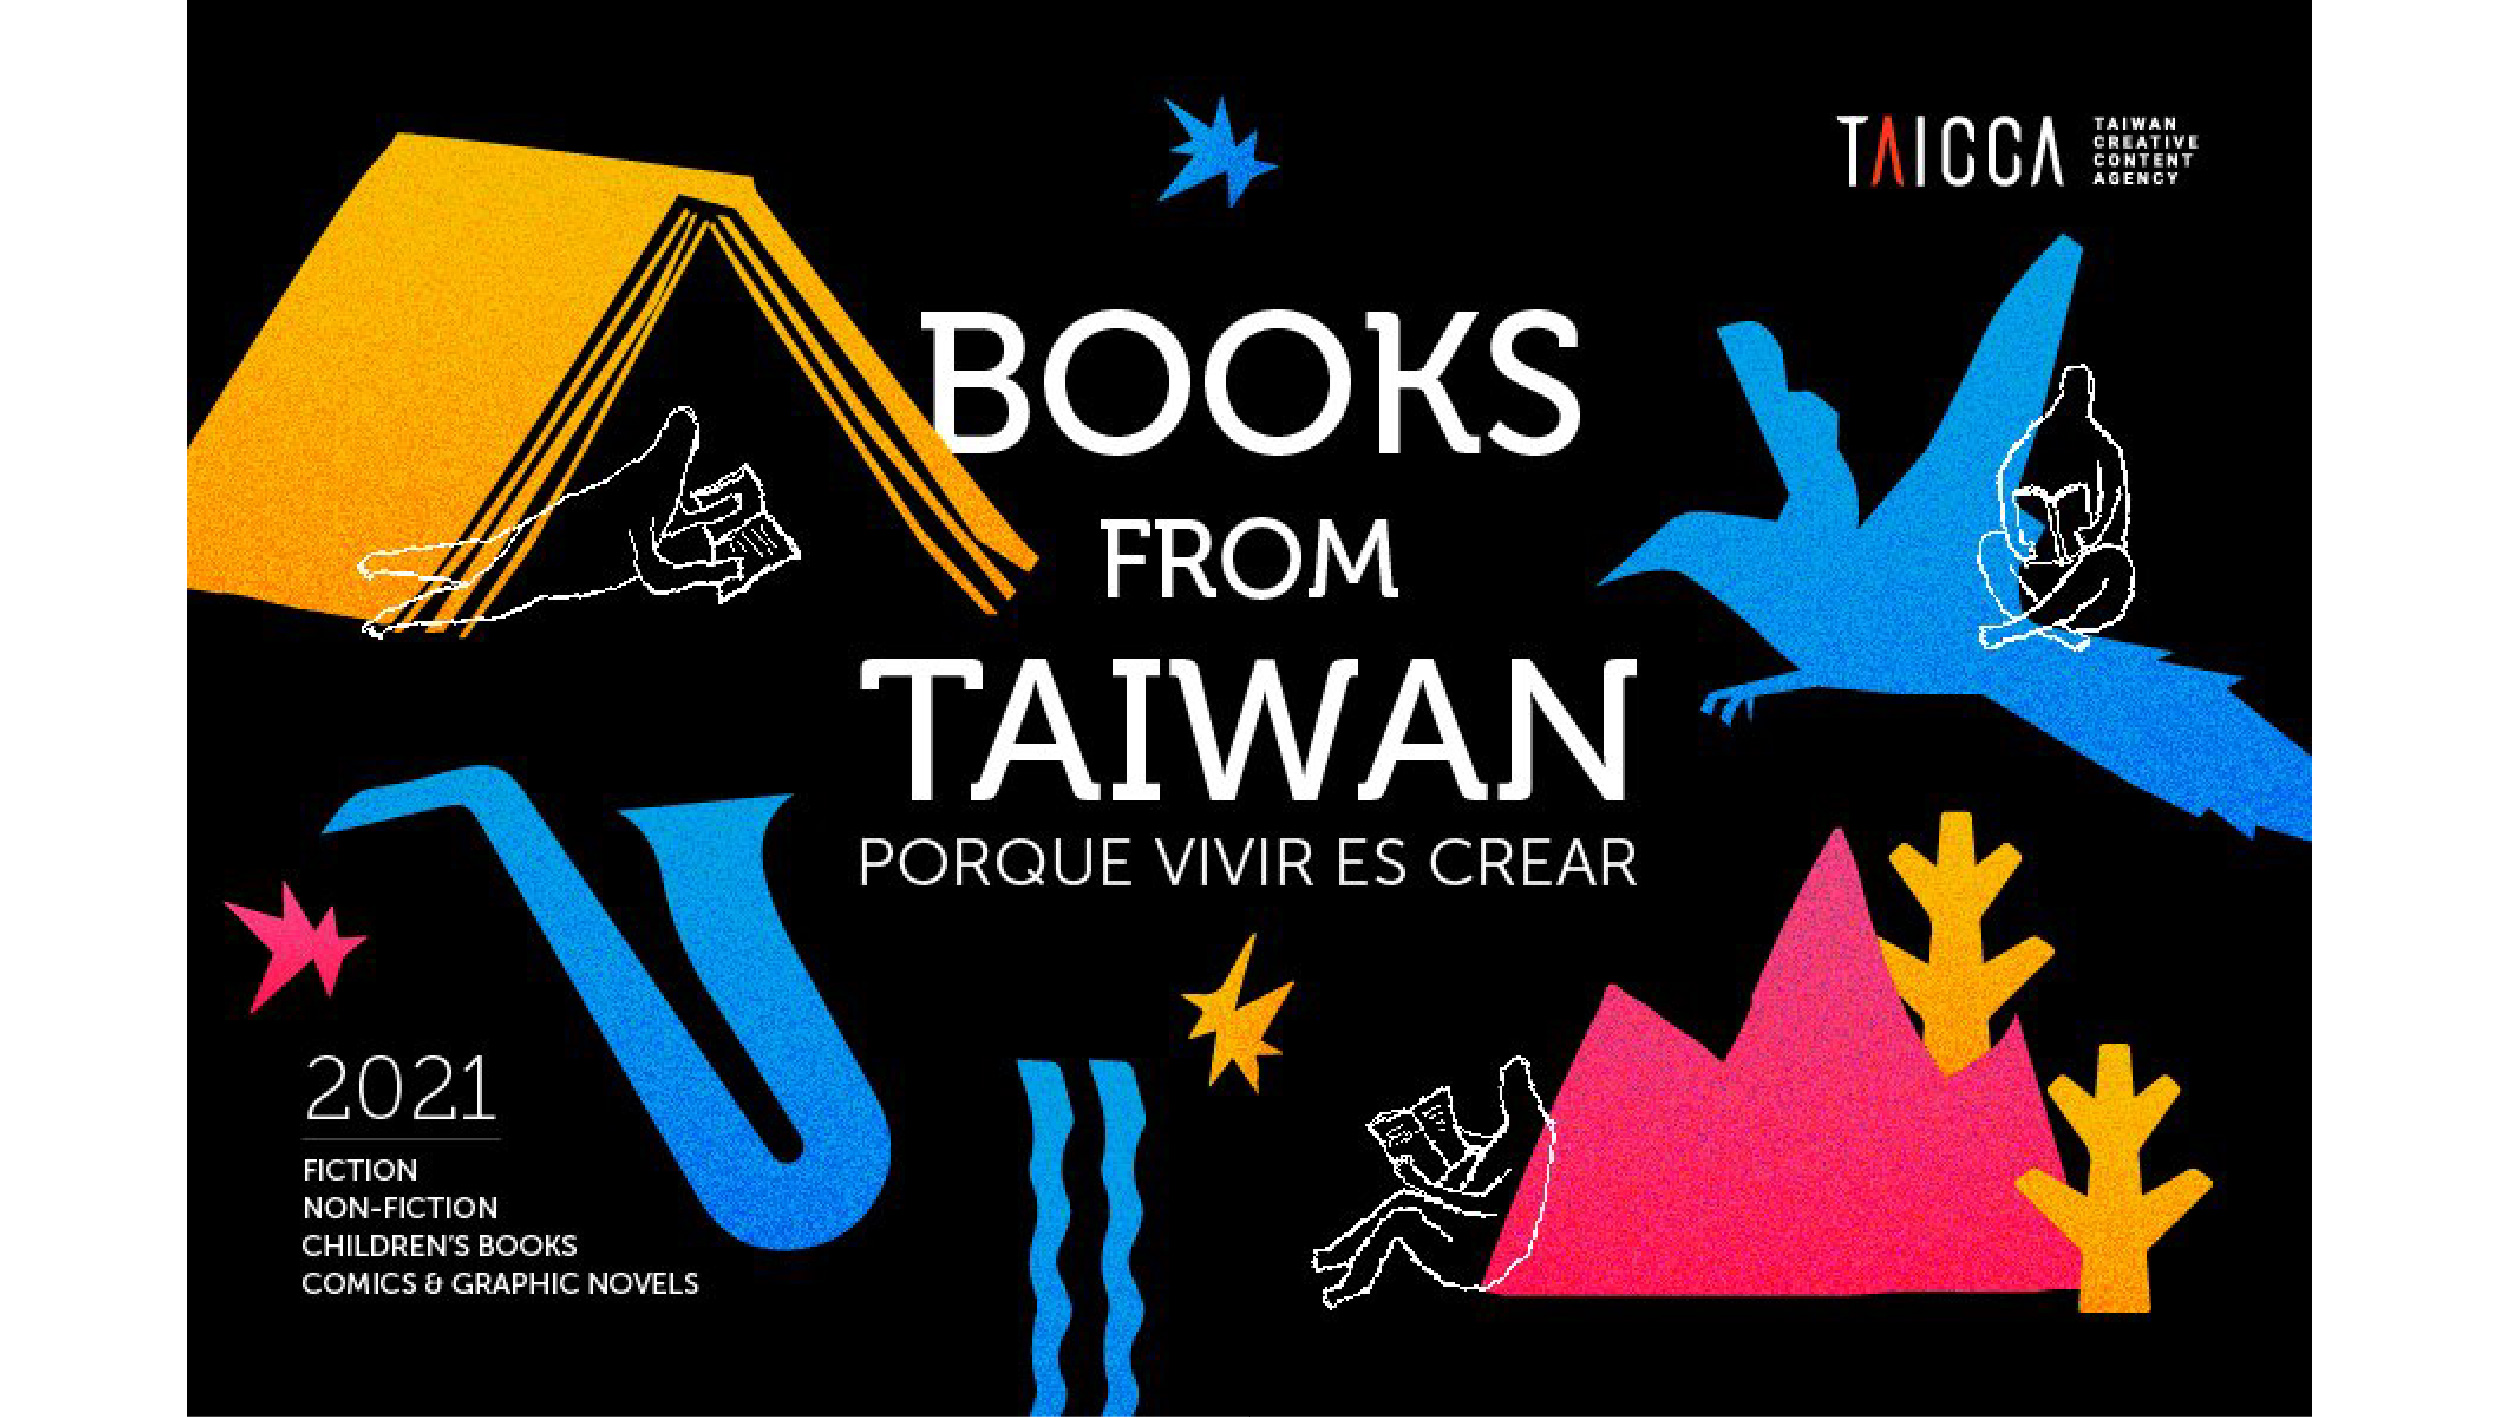 文策院首推「Books From Taiwan」西語行銷 搶進西語出版市場